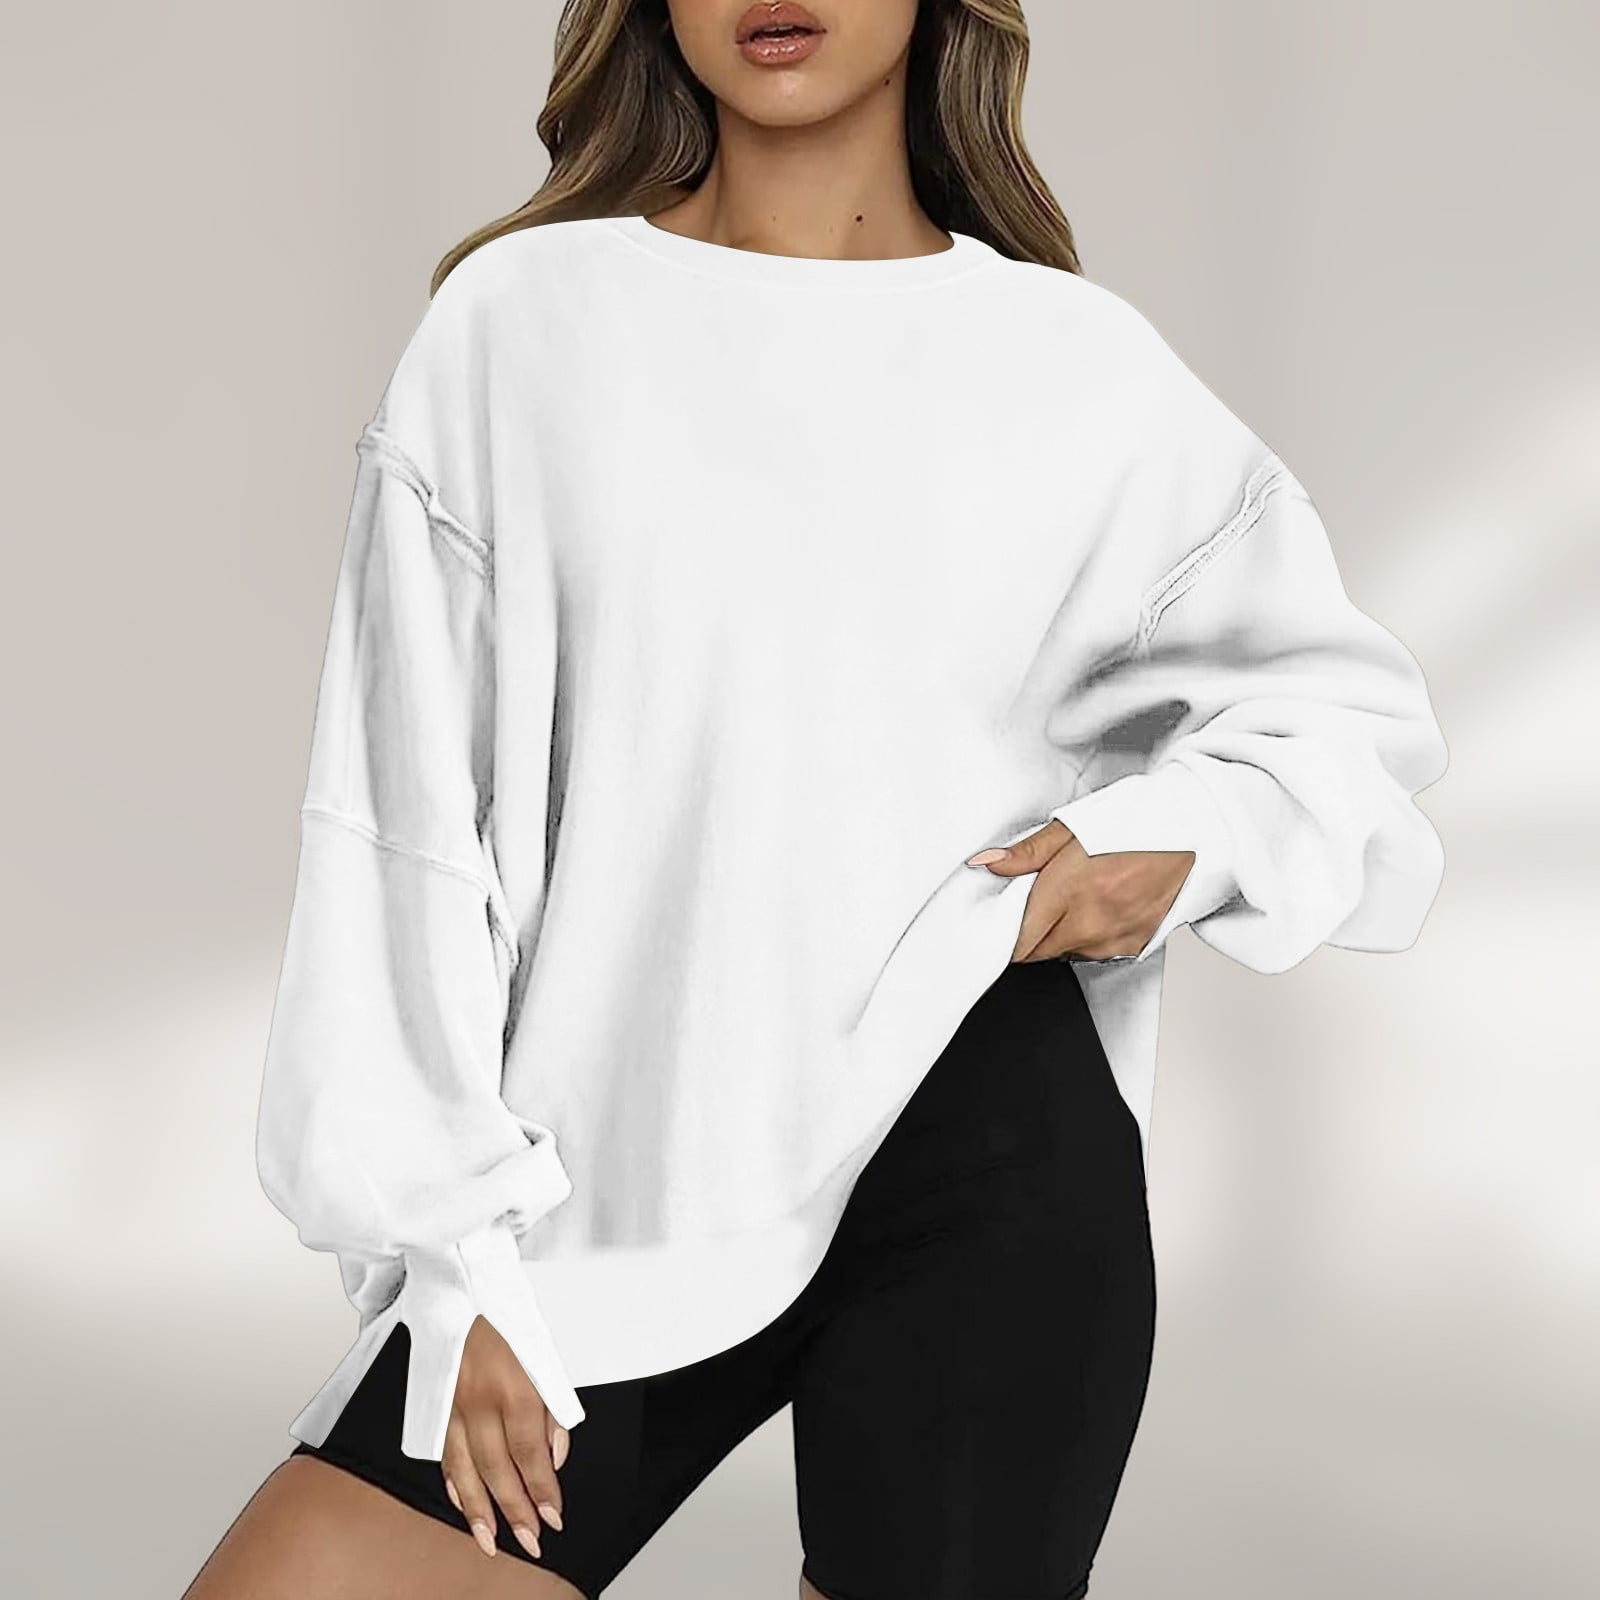 VSSSJ Women's Oversized Sweatshirt Casual Comfy Long Sleeve Loose Fit ...